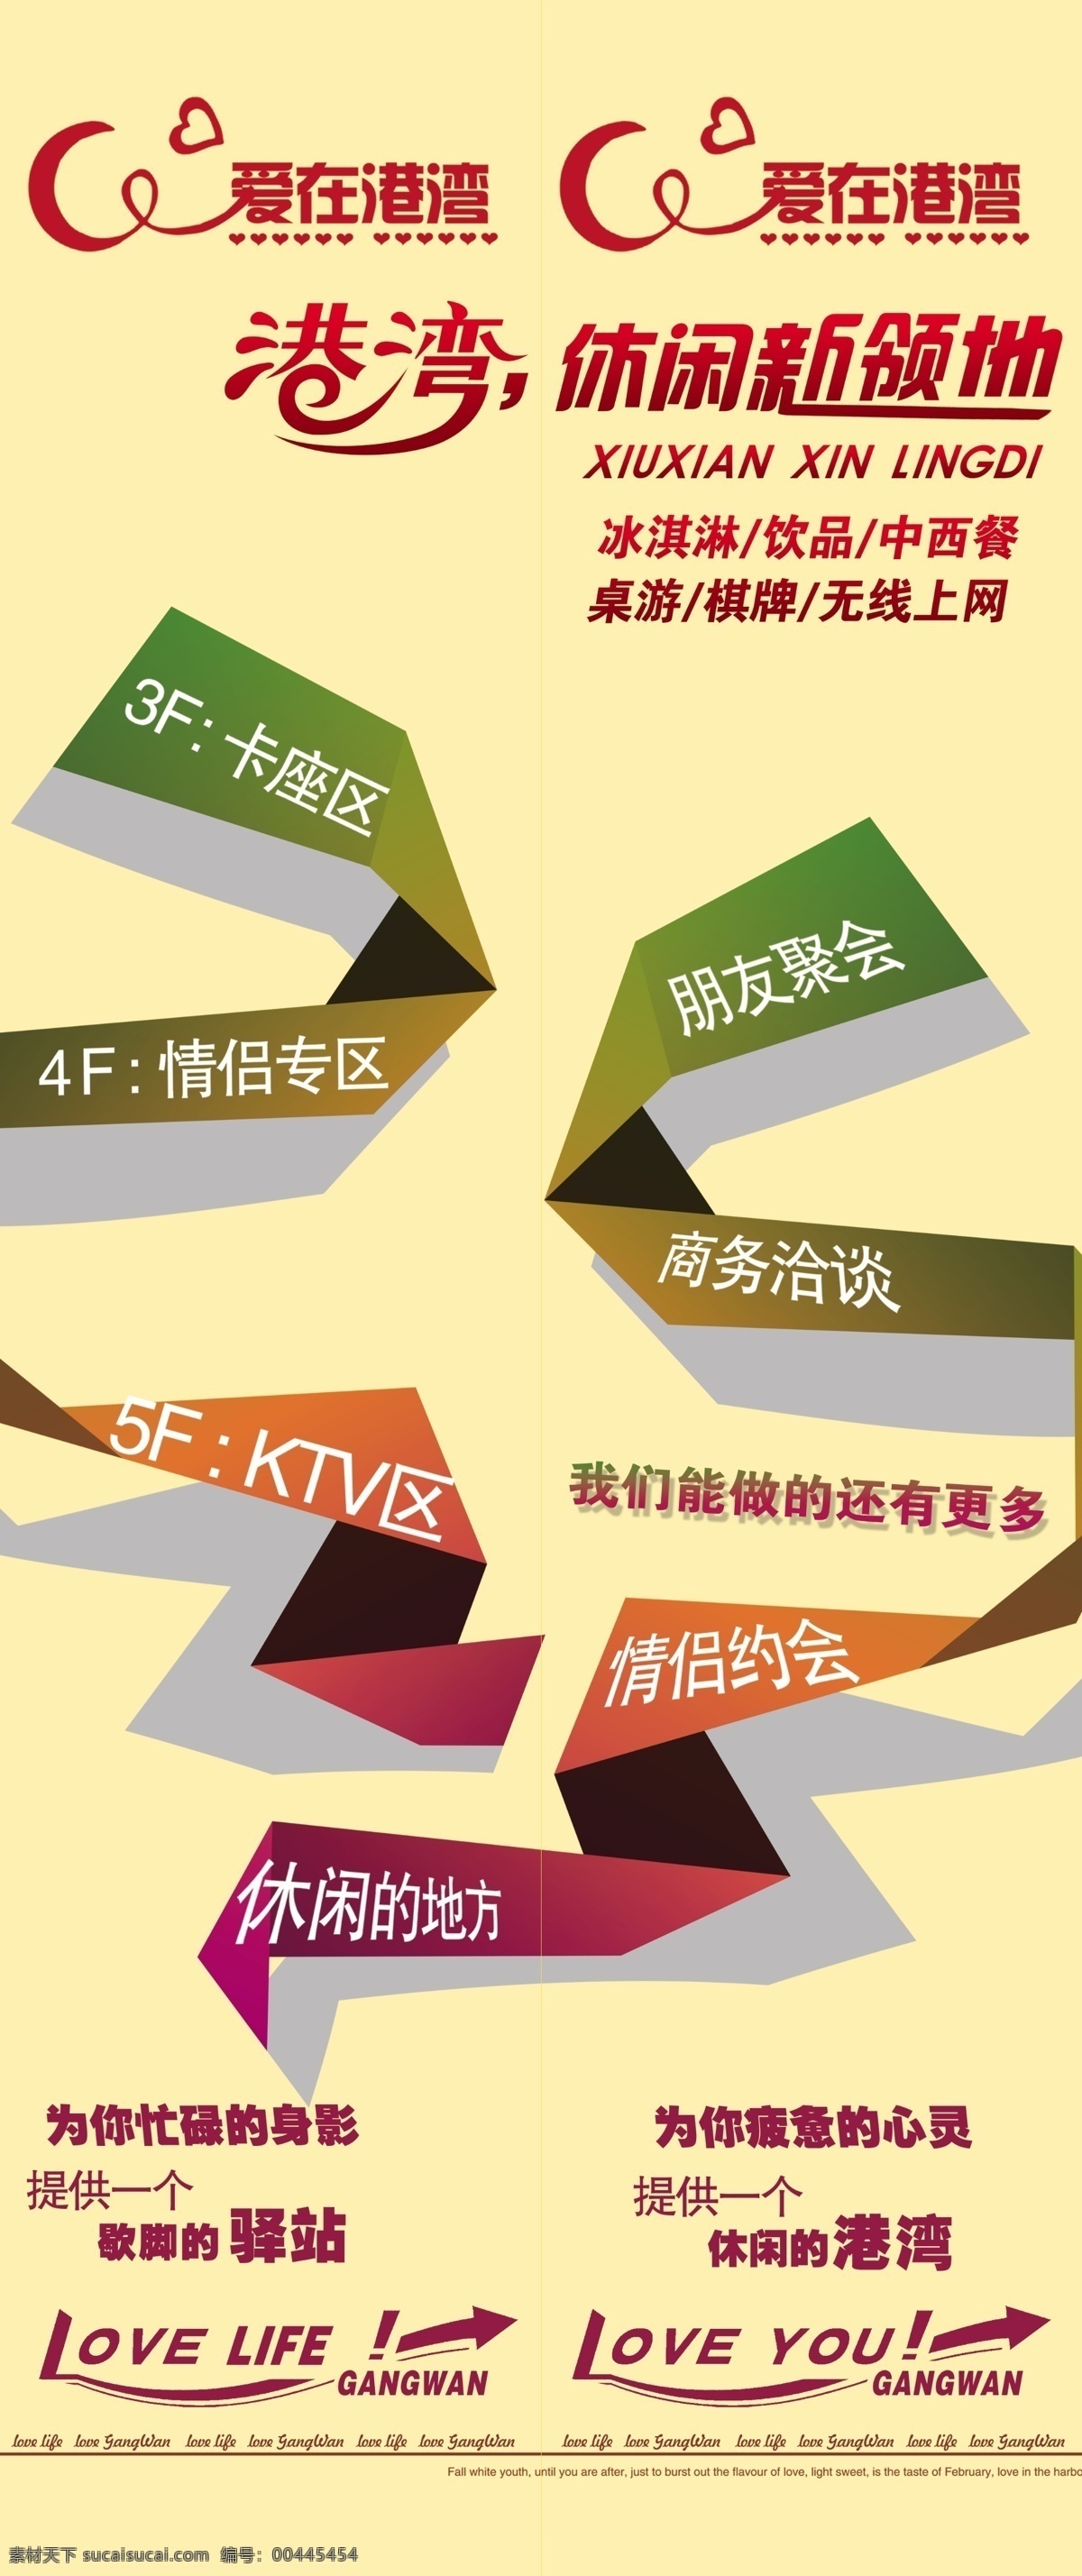 ktv 车贴 电梯 港湾 广告设计模板 源文件 海报 模板下载 情侣约会 其他海报设计